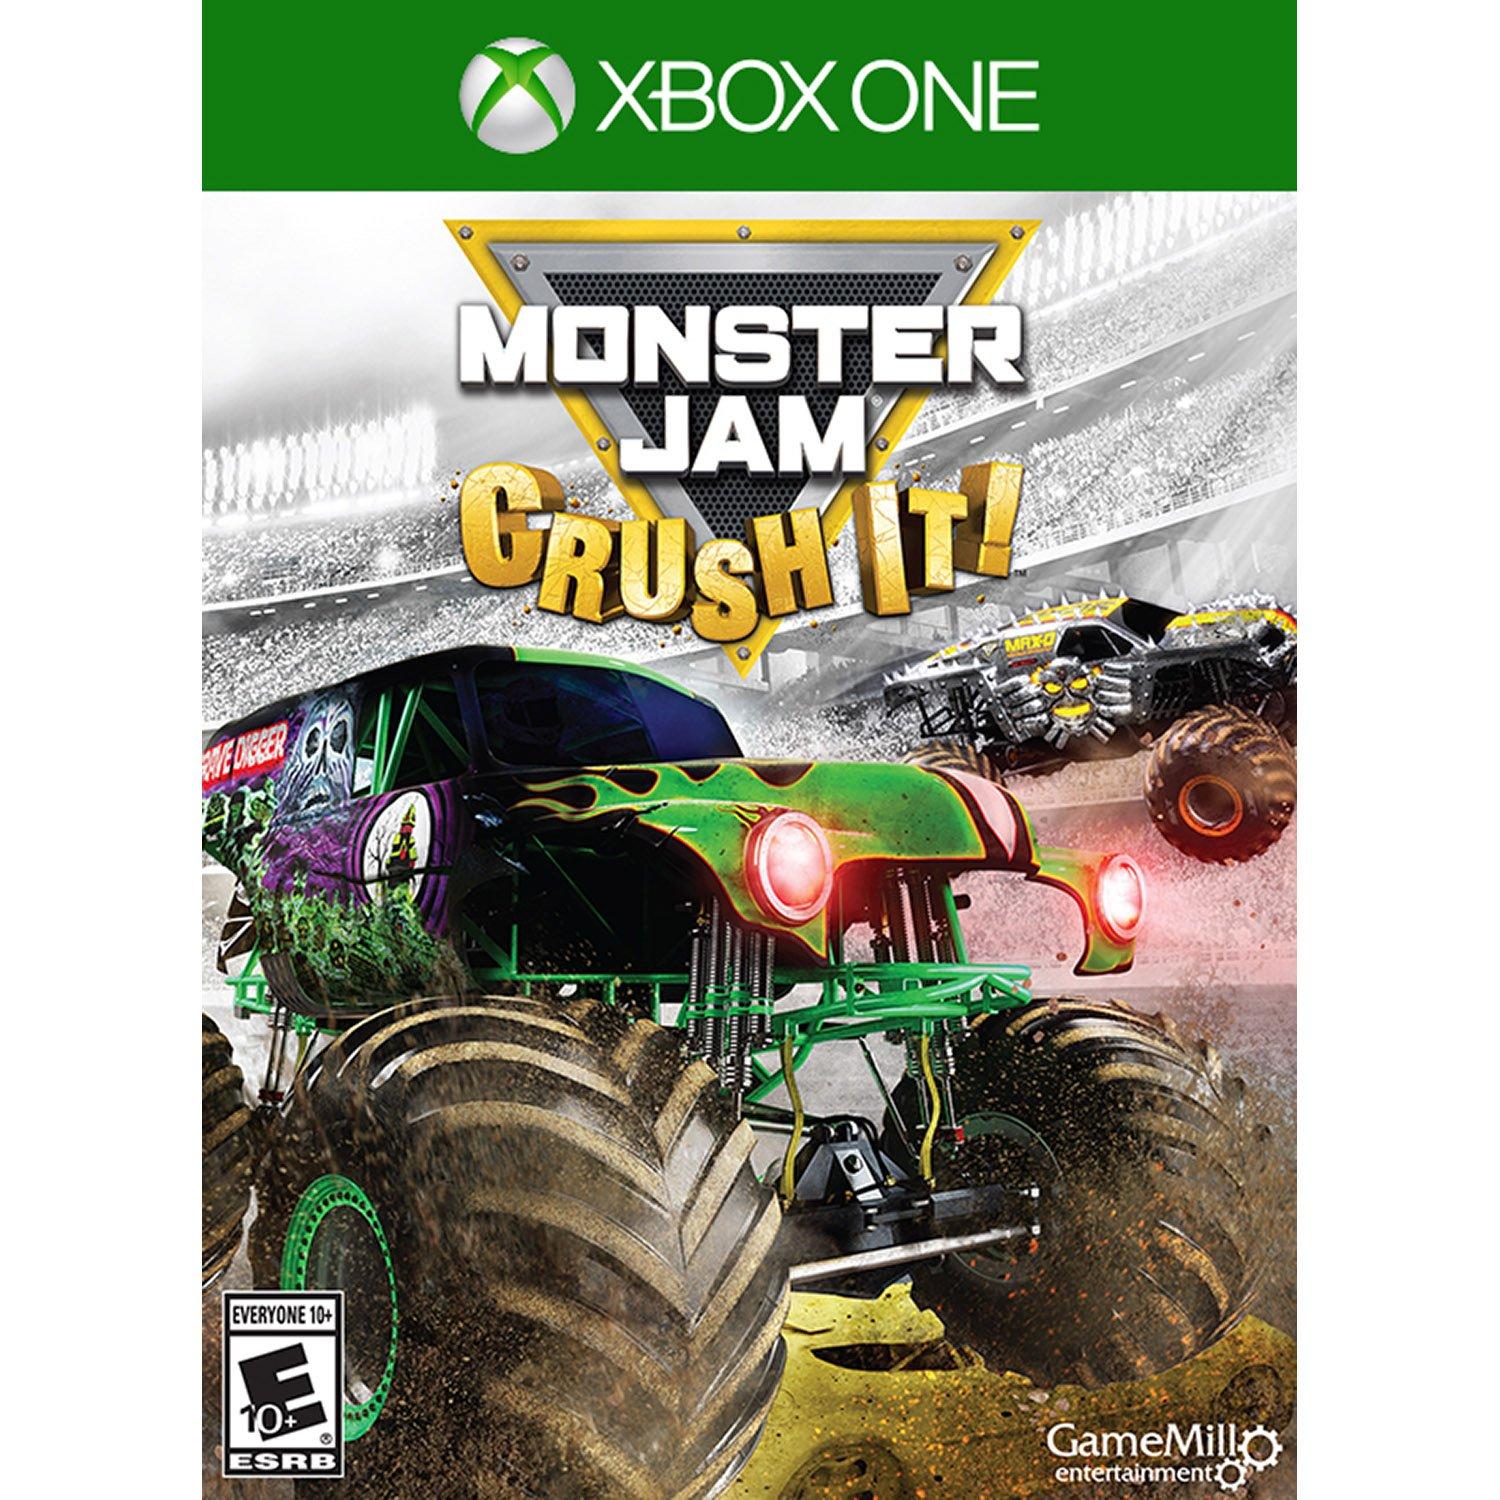 Monster Jam Crush It | Xbox One | GameStop